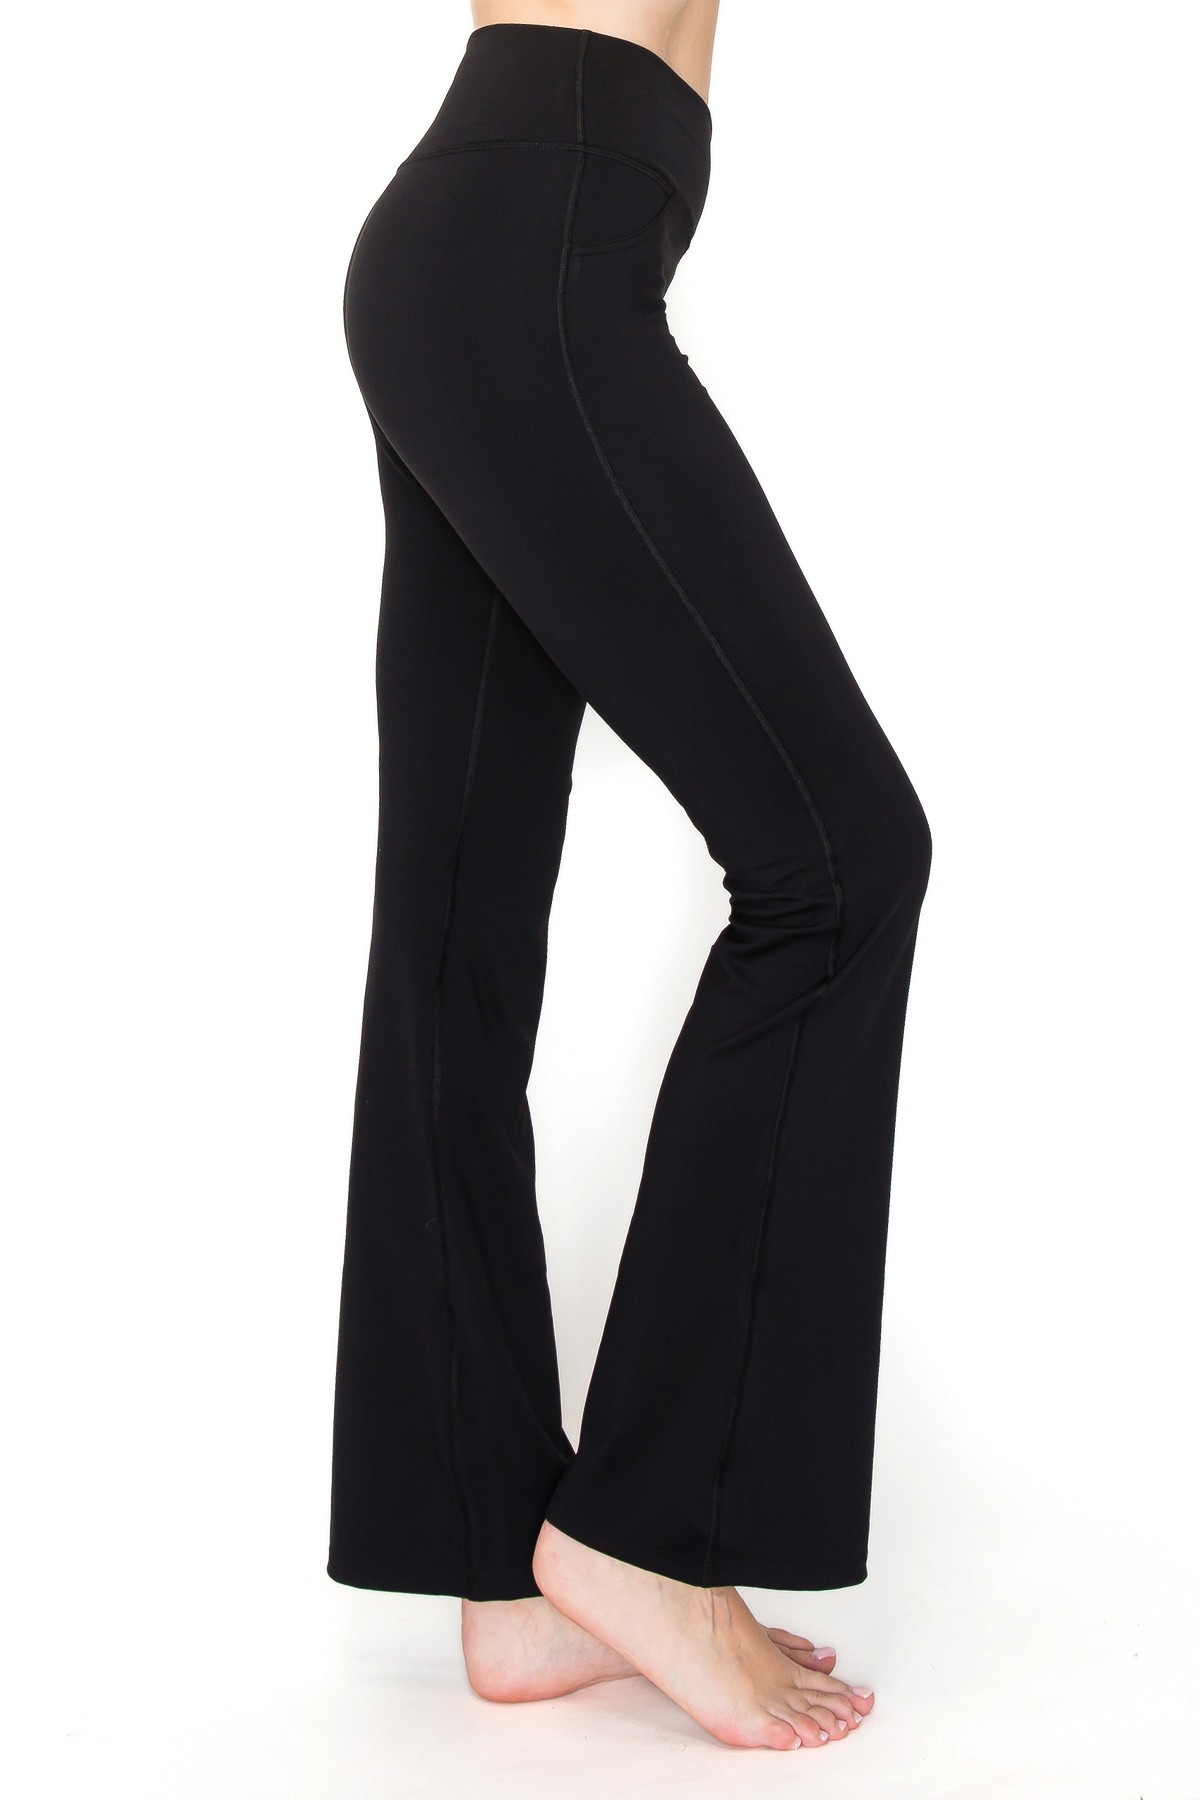 WHC V-Waist Mini Flare Yoga Pants - Black